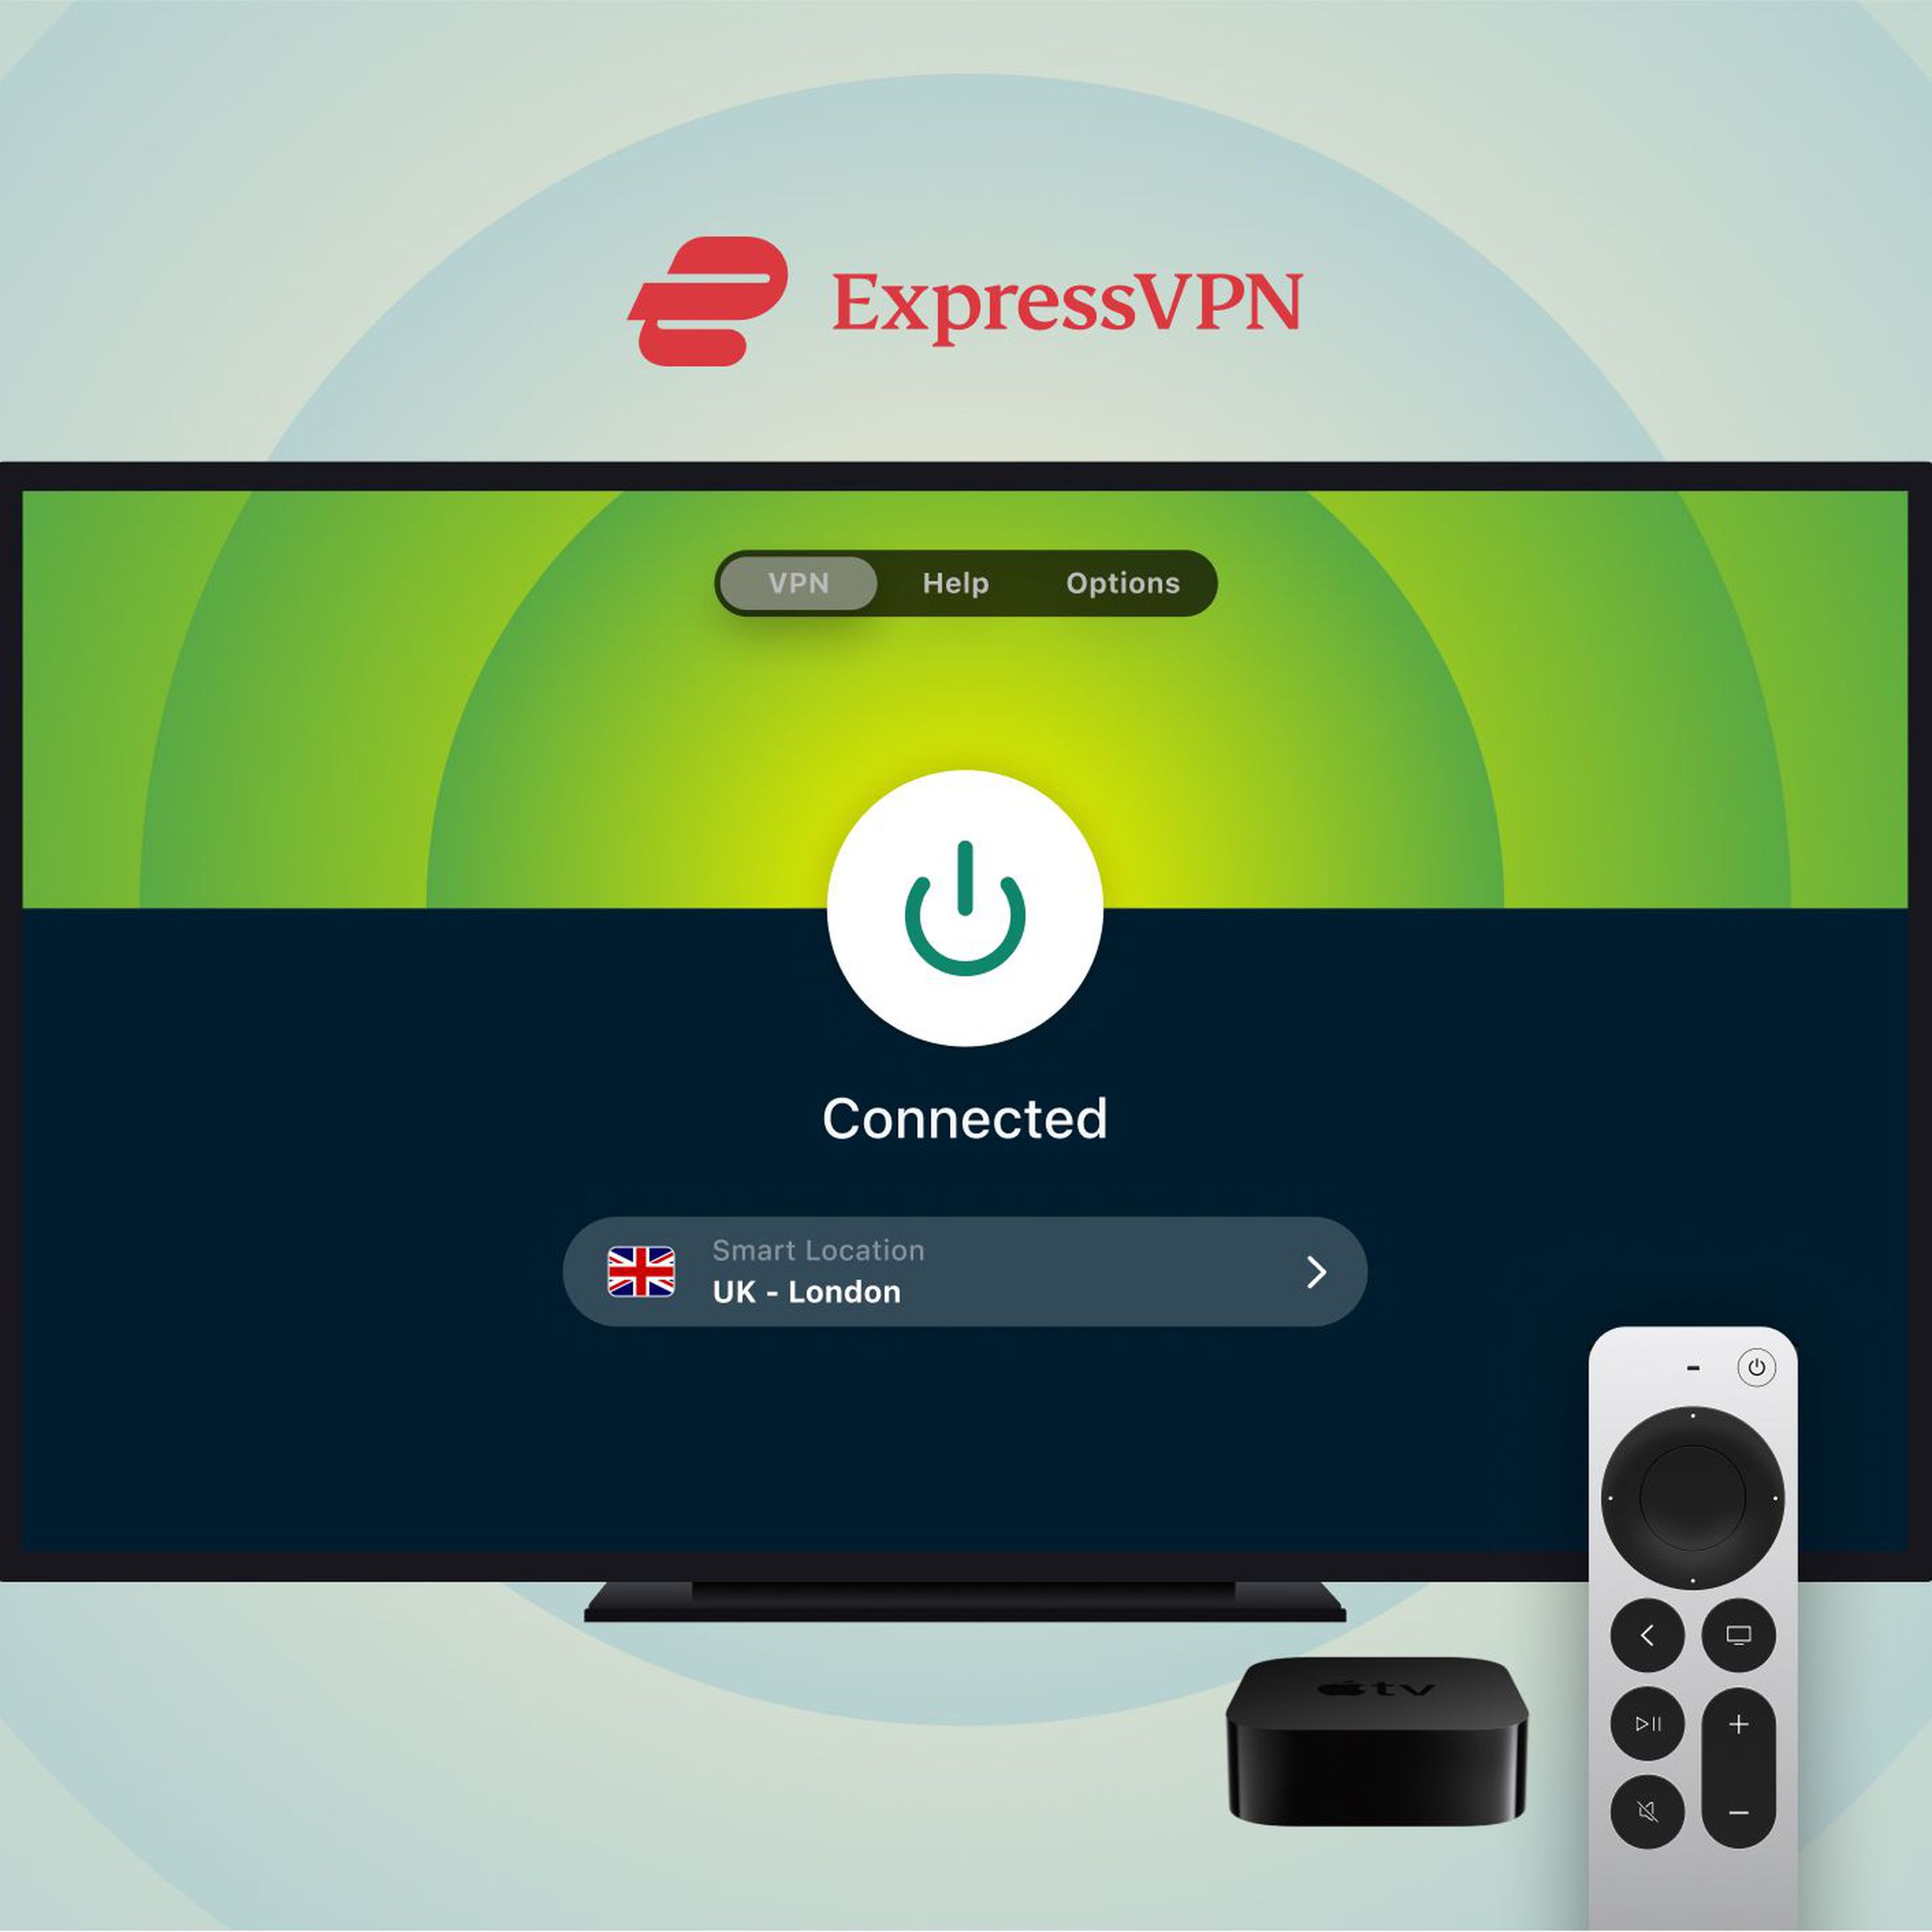 An image showing ExpressVPN running on an Apple TV.